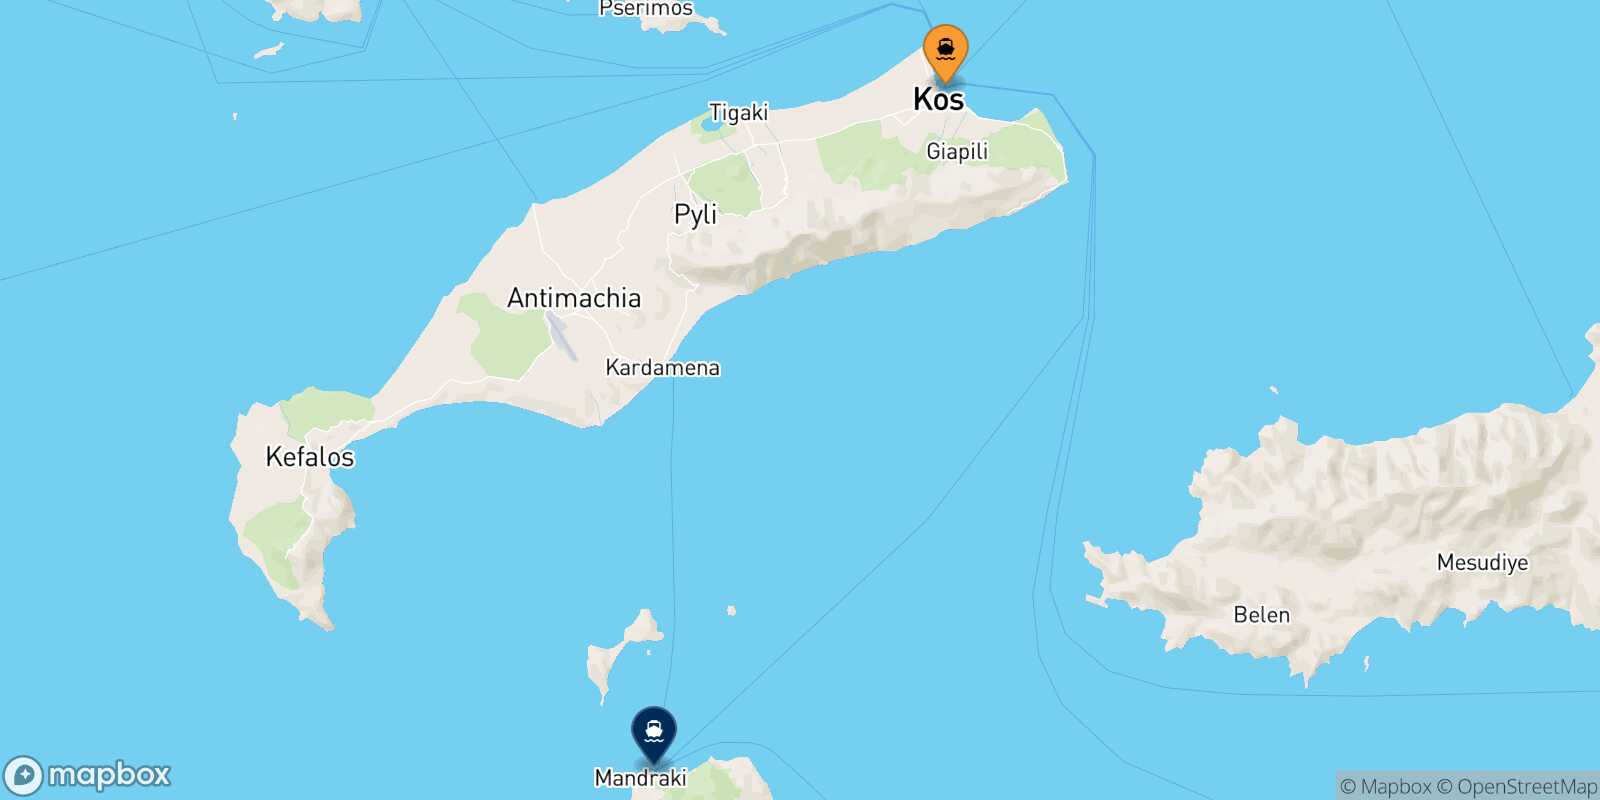 Kos Nisyros route map